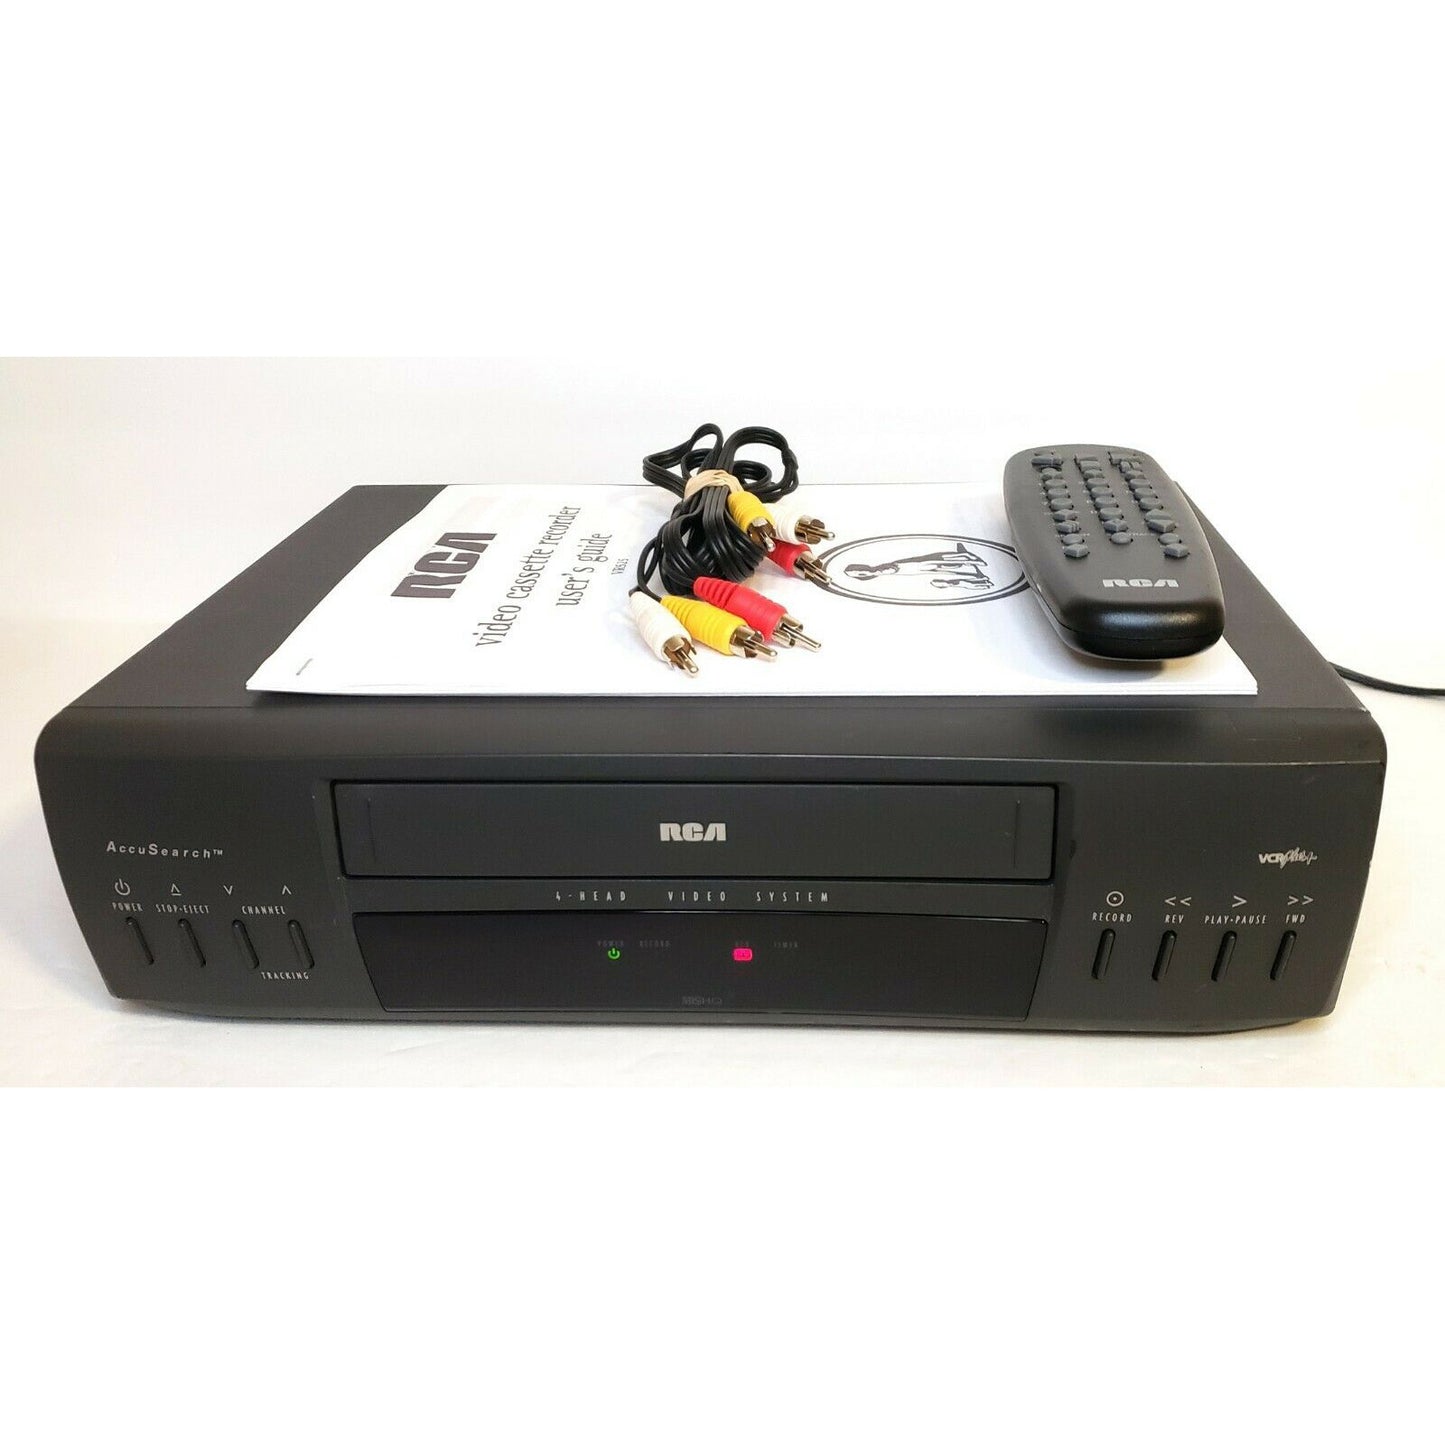 RCA VR525 VCR, 4-Head Mono